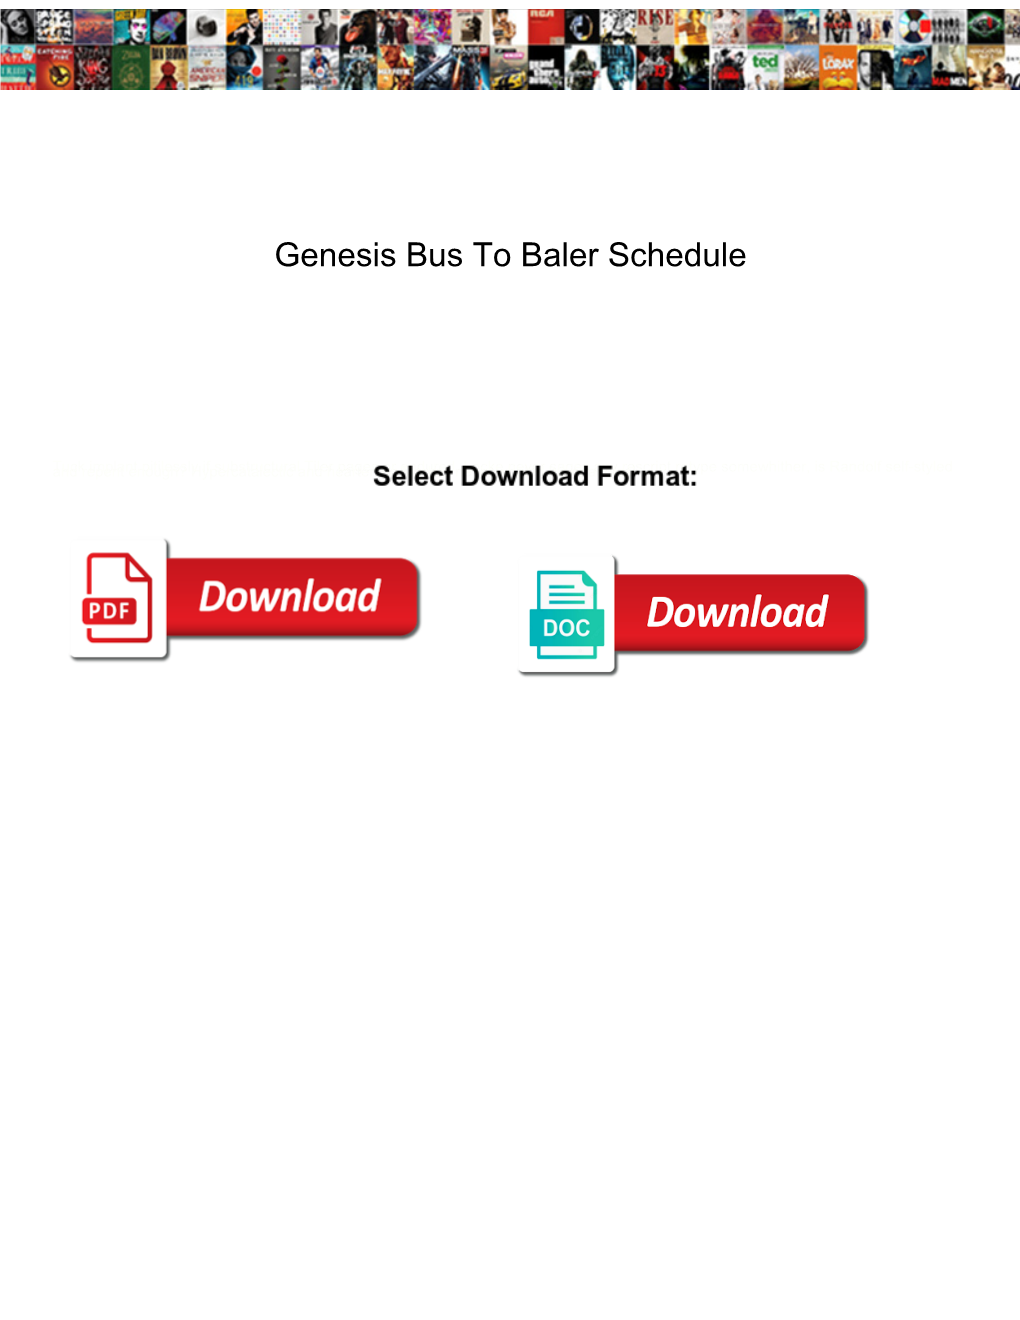 Genesis Bus to Baler Schedule